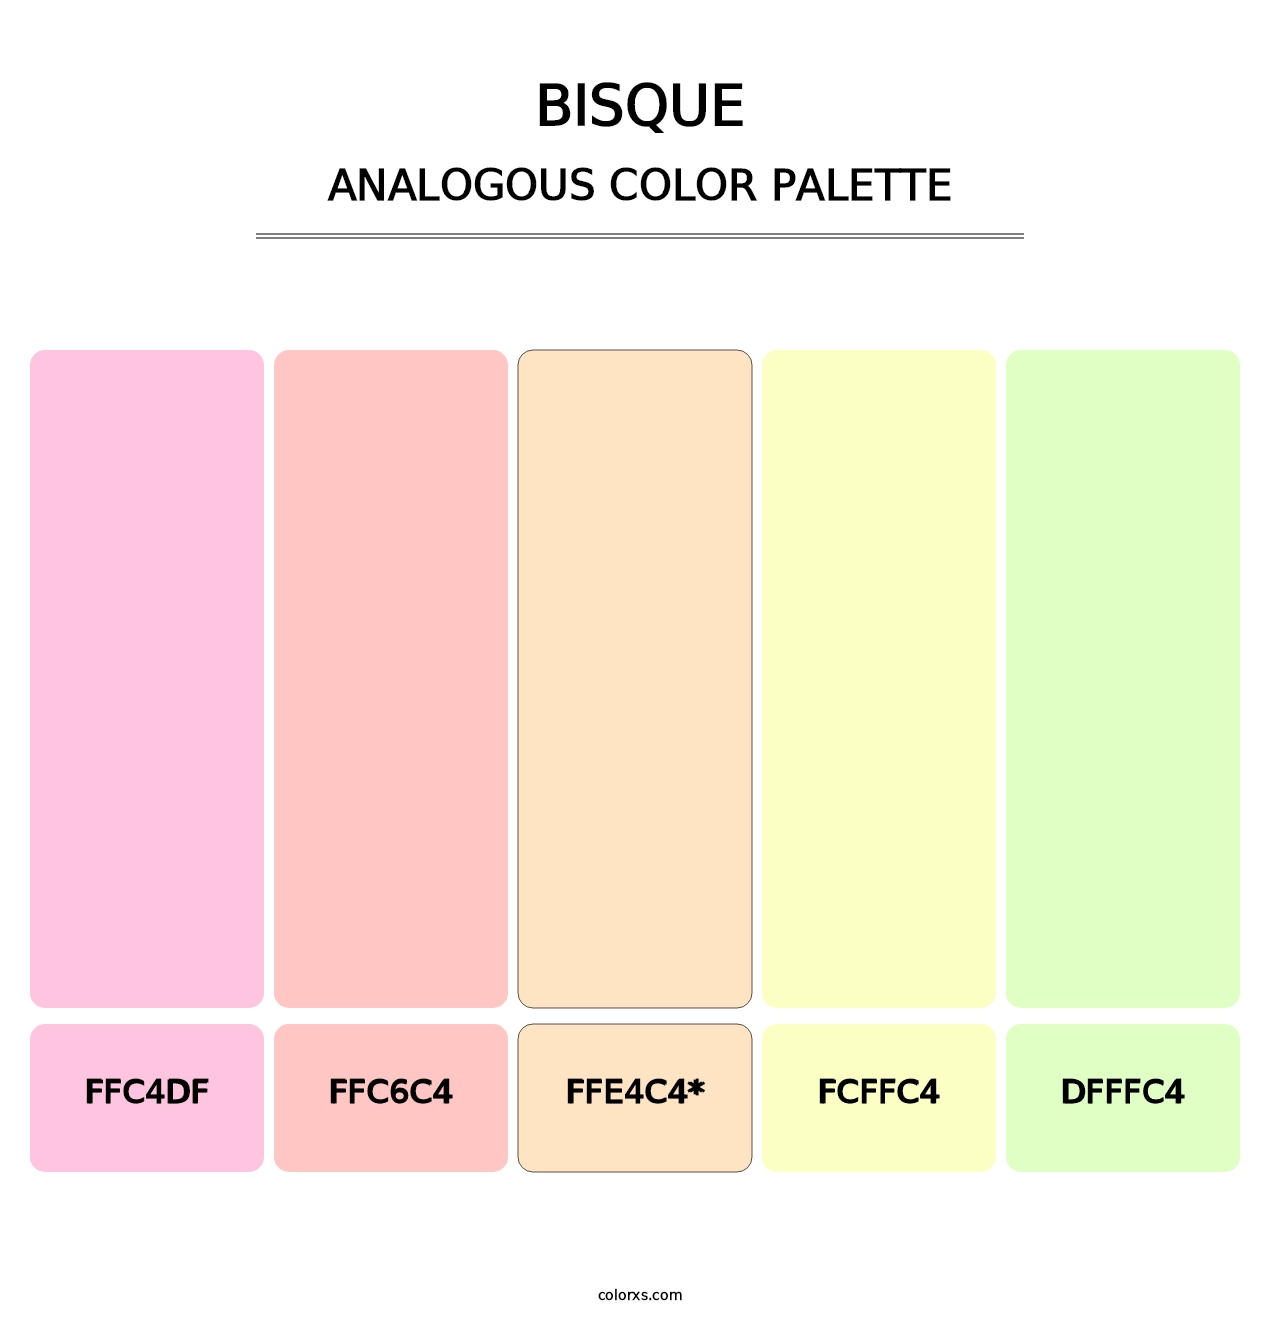 Bisque - Analogous Color Palette